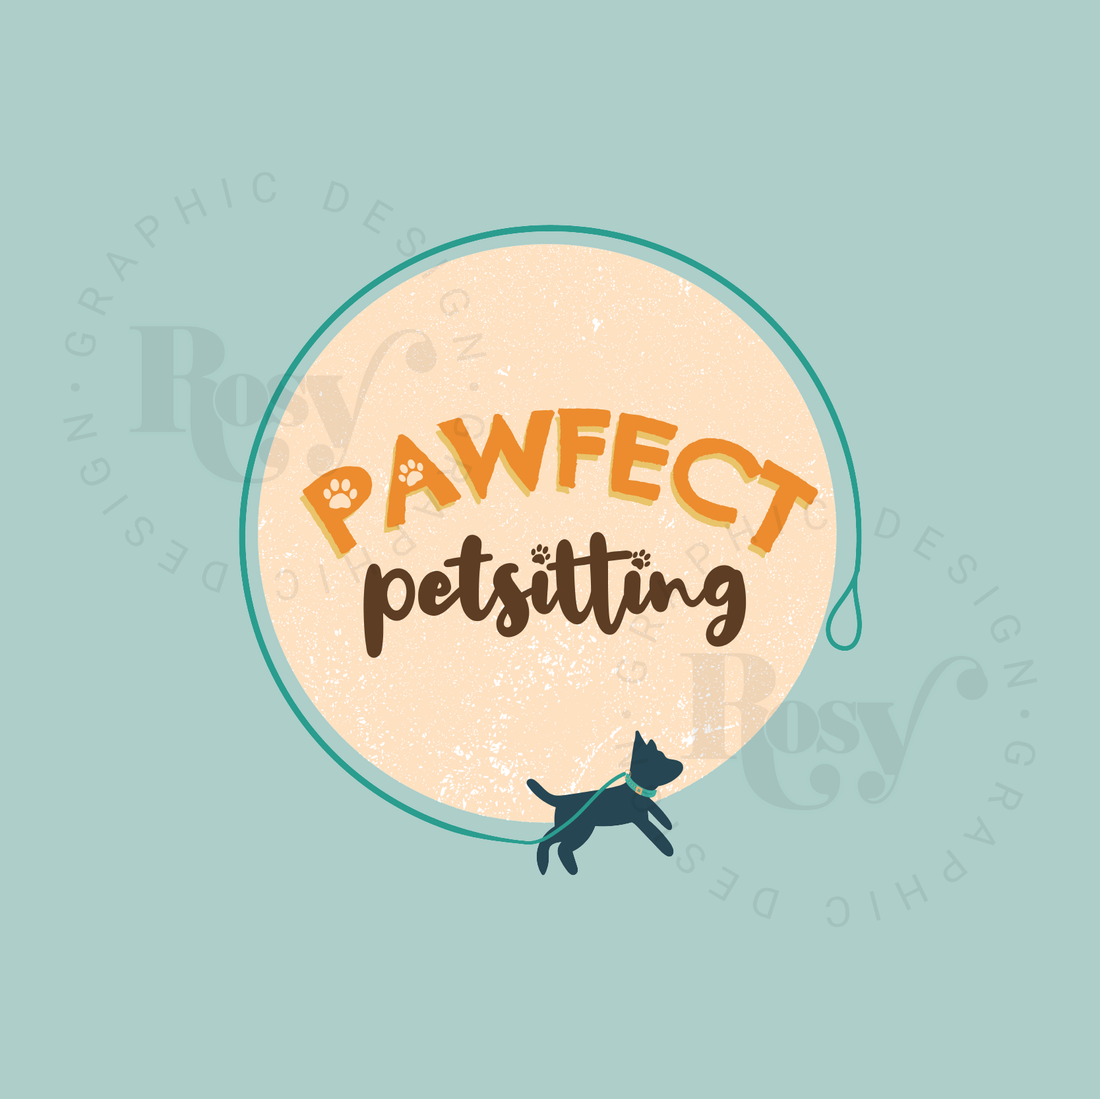 Pawfect PetSitting